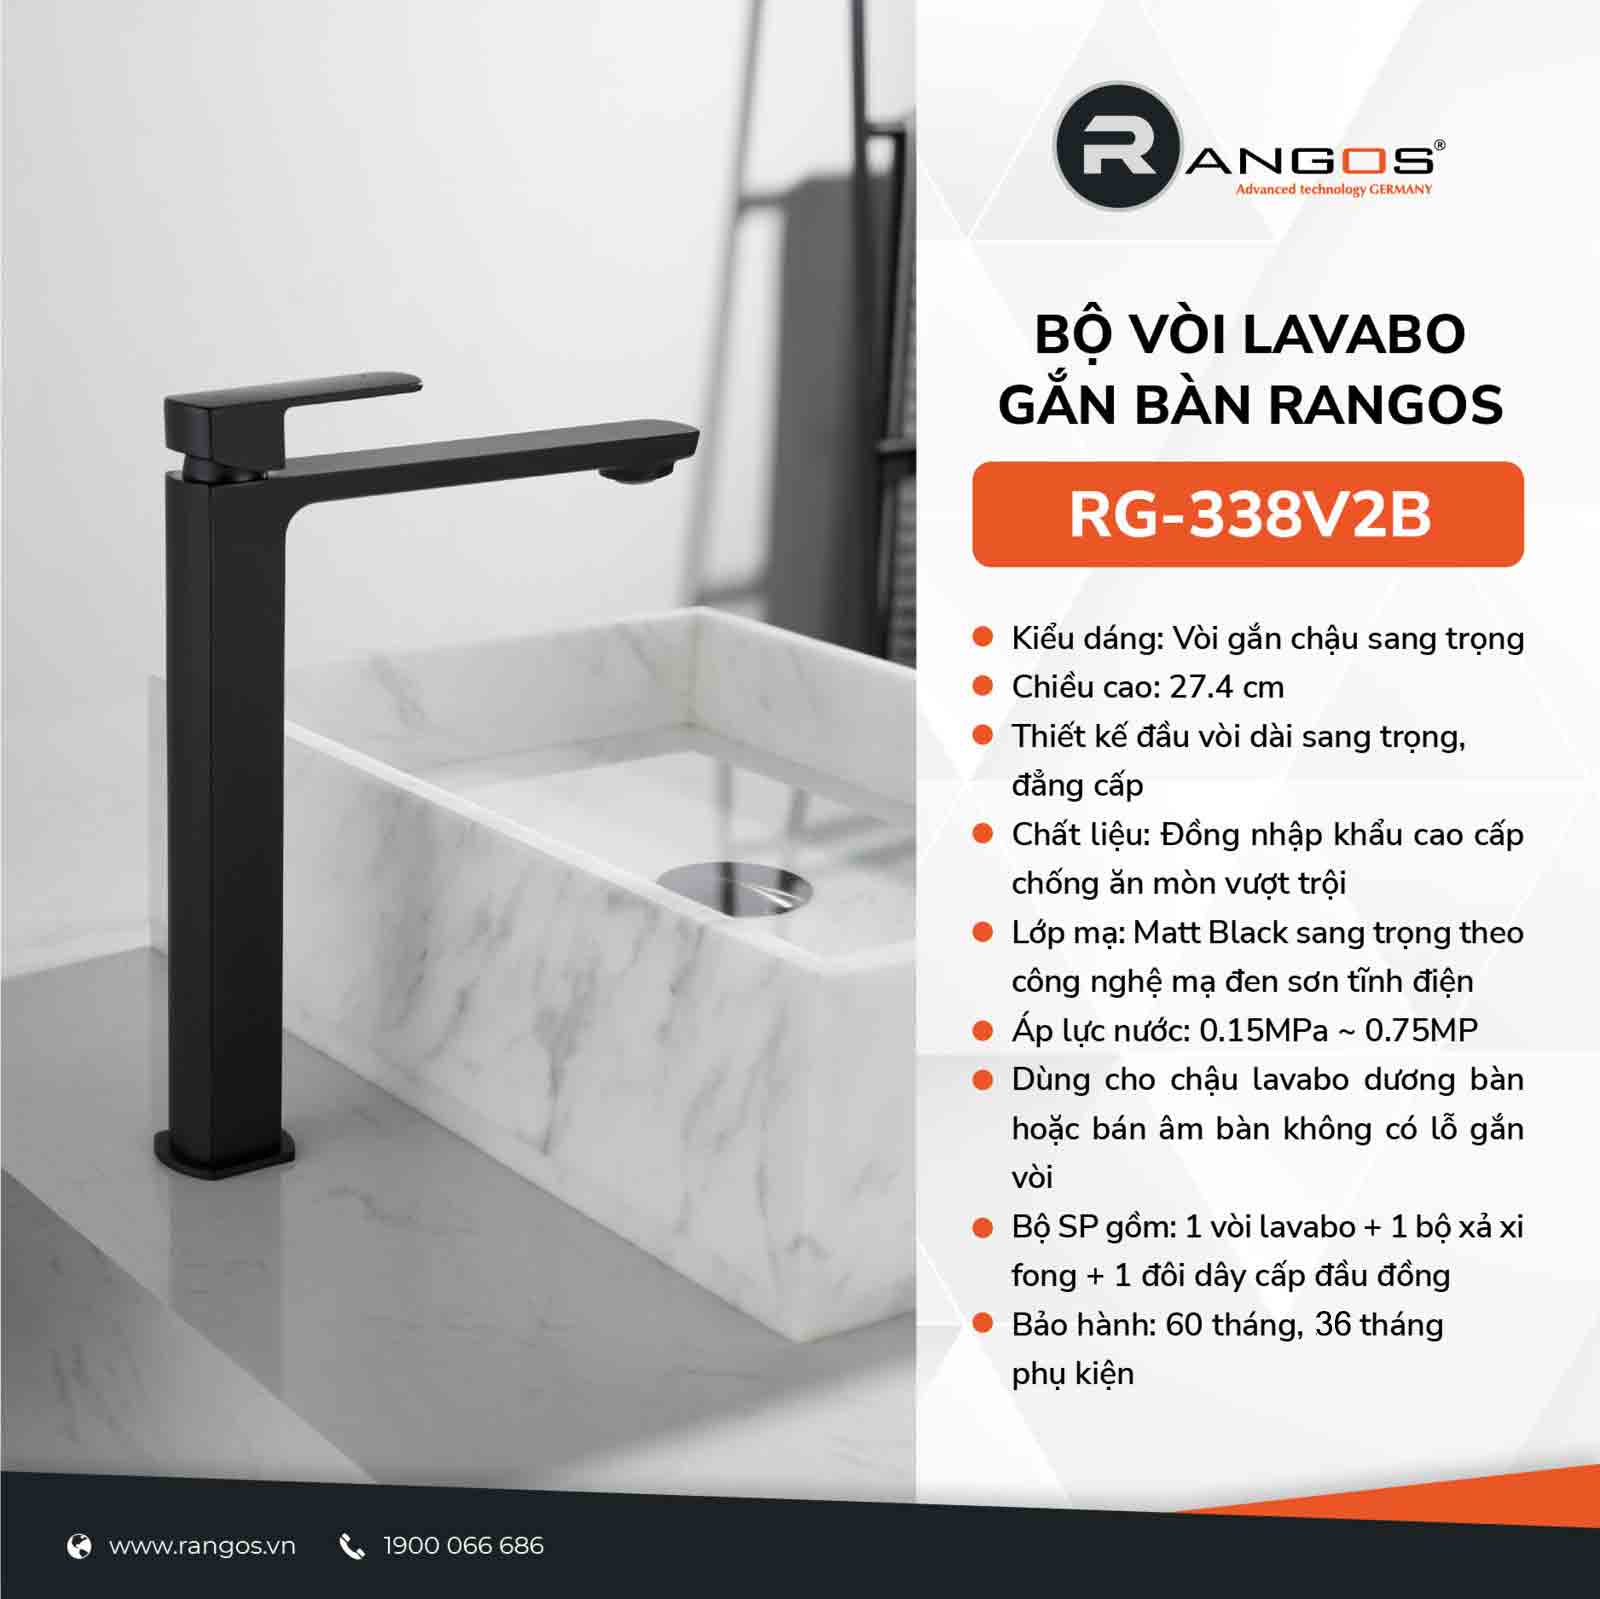 Bộ vòi lavabo gắn bàn Rangos RG-338V2B